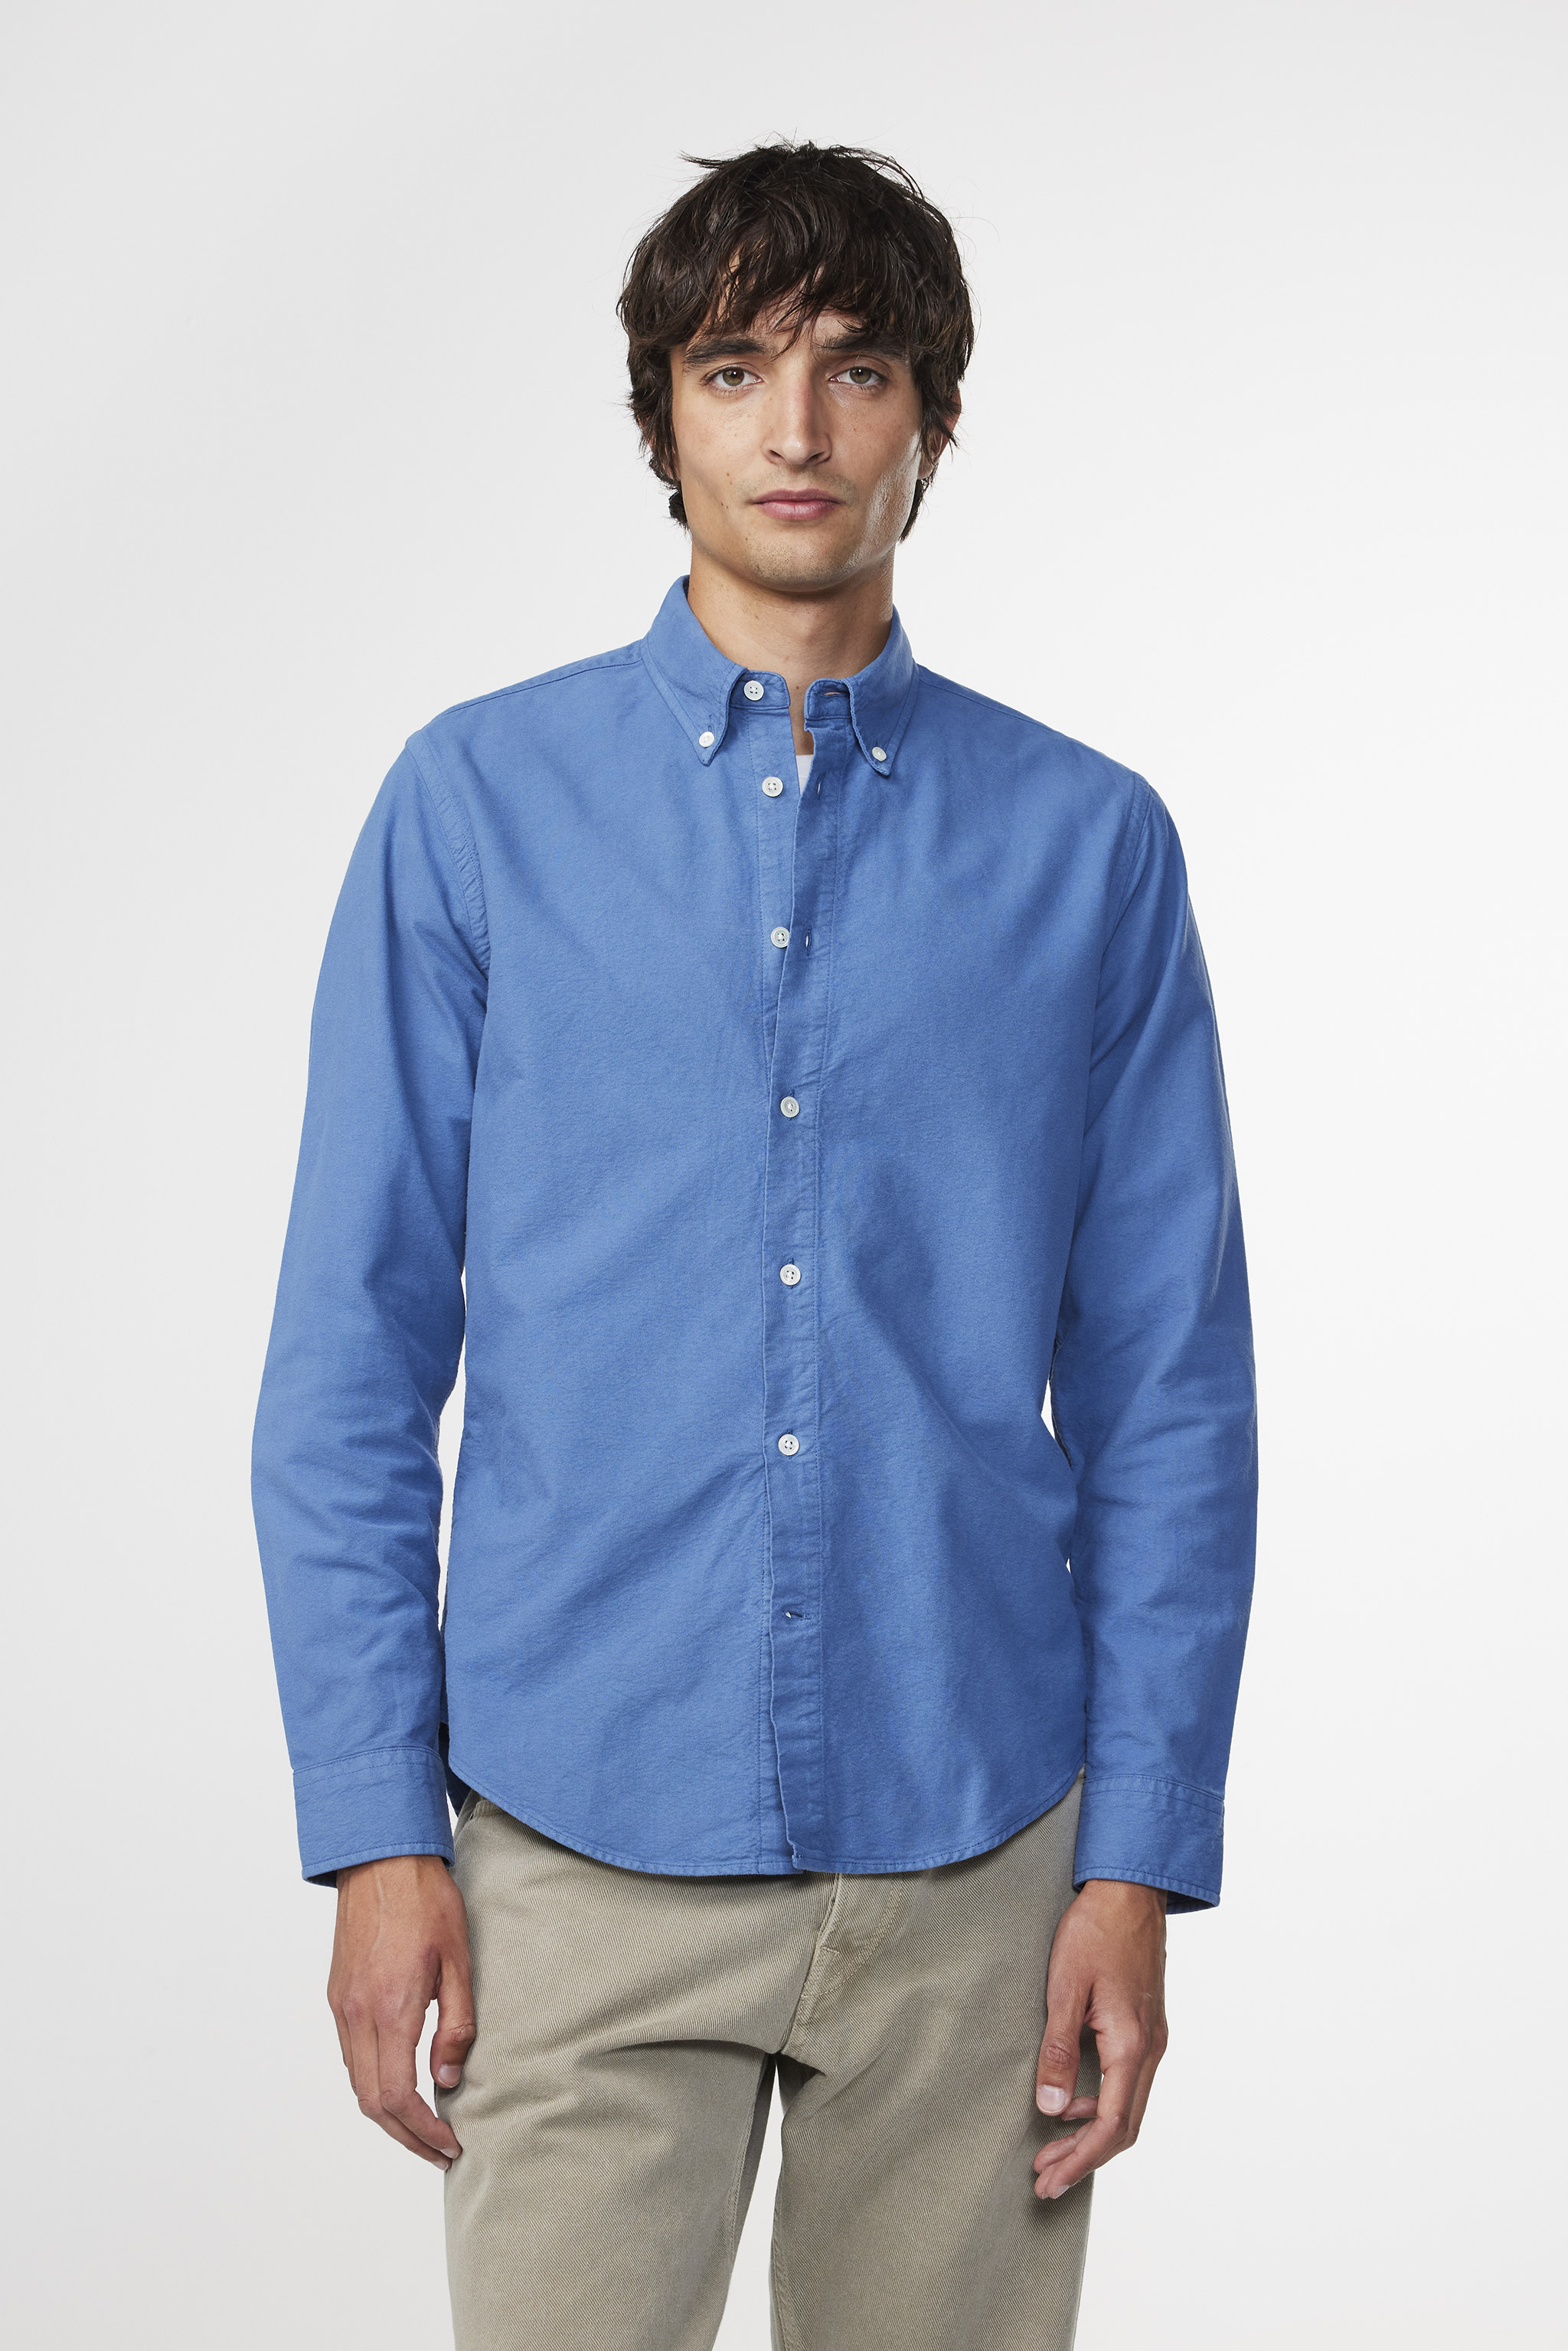 Arne 5725 men's shirt - Gray Blue - Buy online at NN.07®